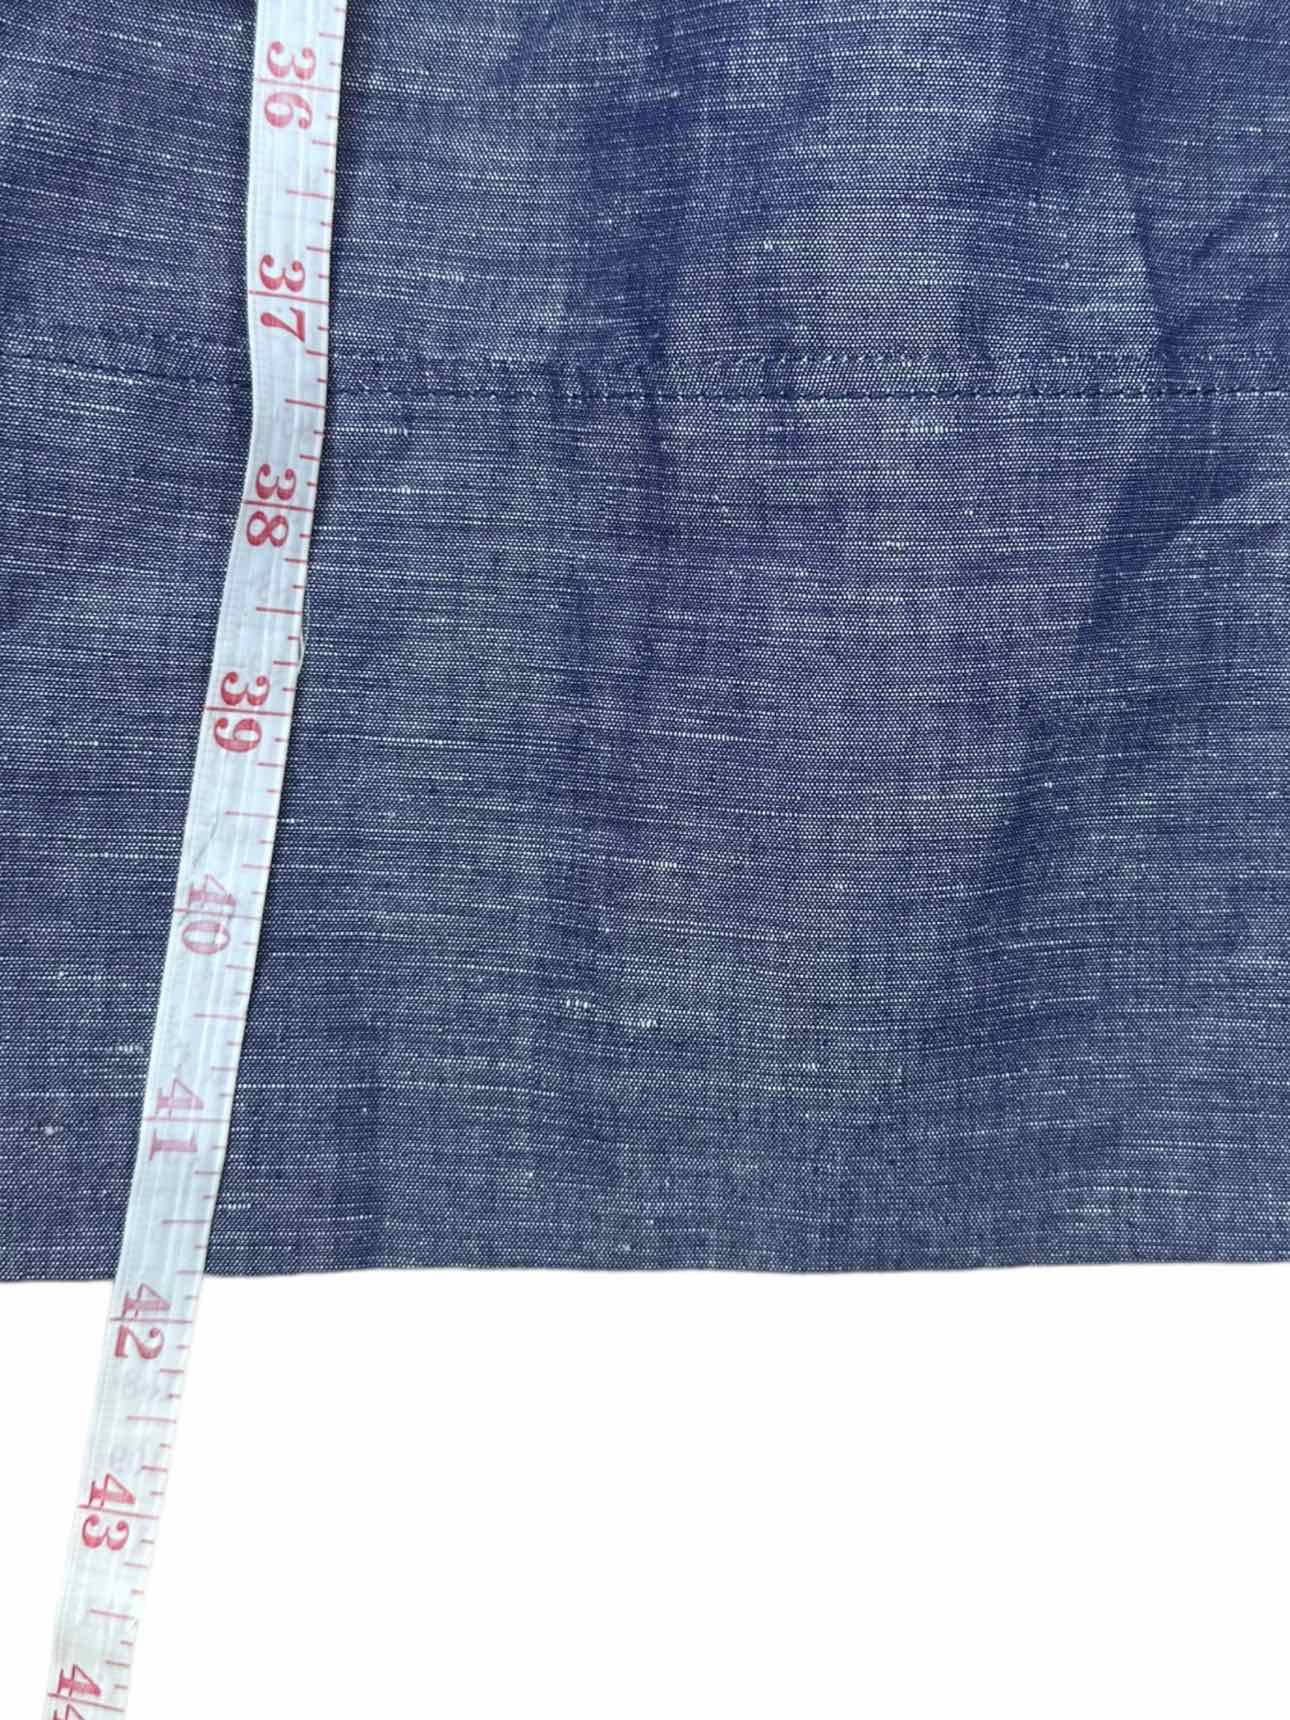 Boden Blue Chambray Linen Blend Dress Size 6 Long